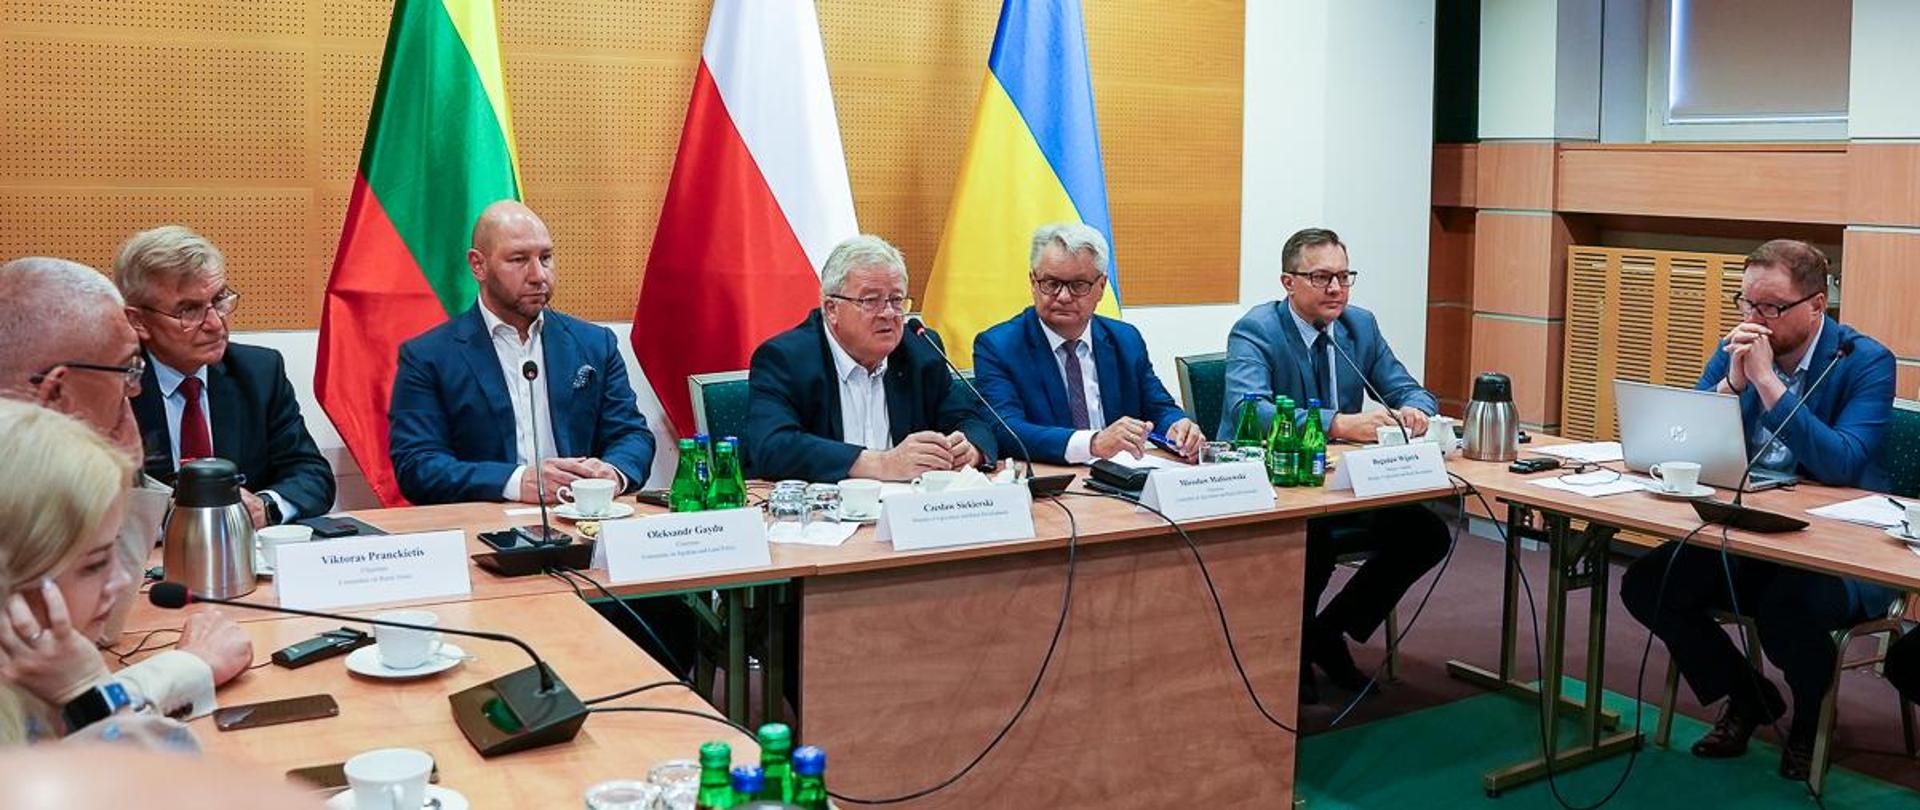 Minister Czesław Siekierski otwiera spotkanie w ramach Trójkąta Lubelskiego (fot. MRiRW)